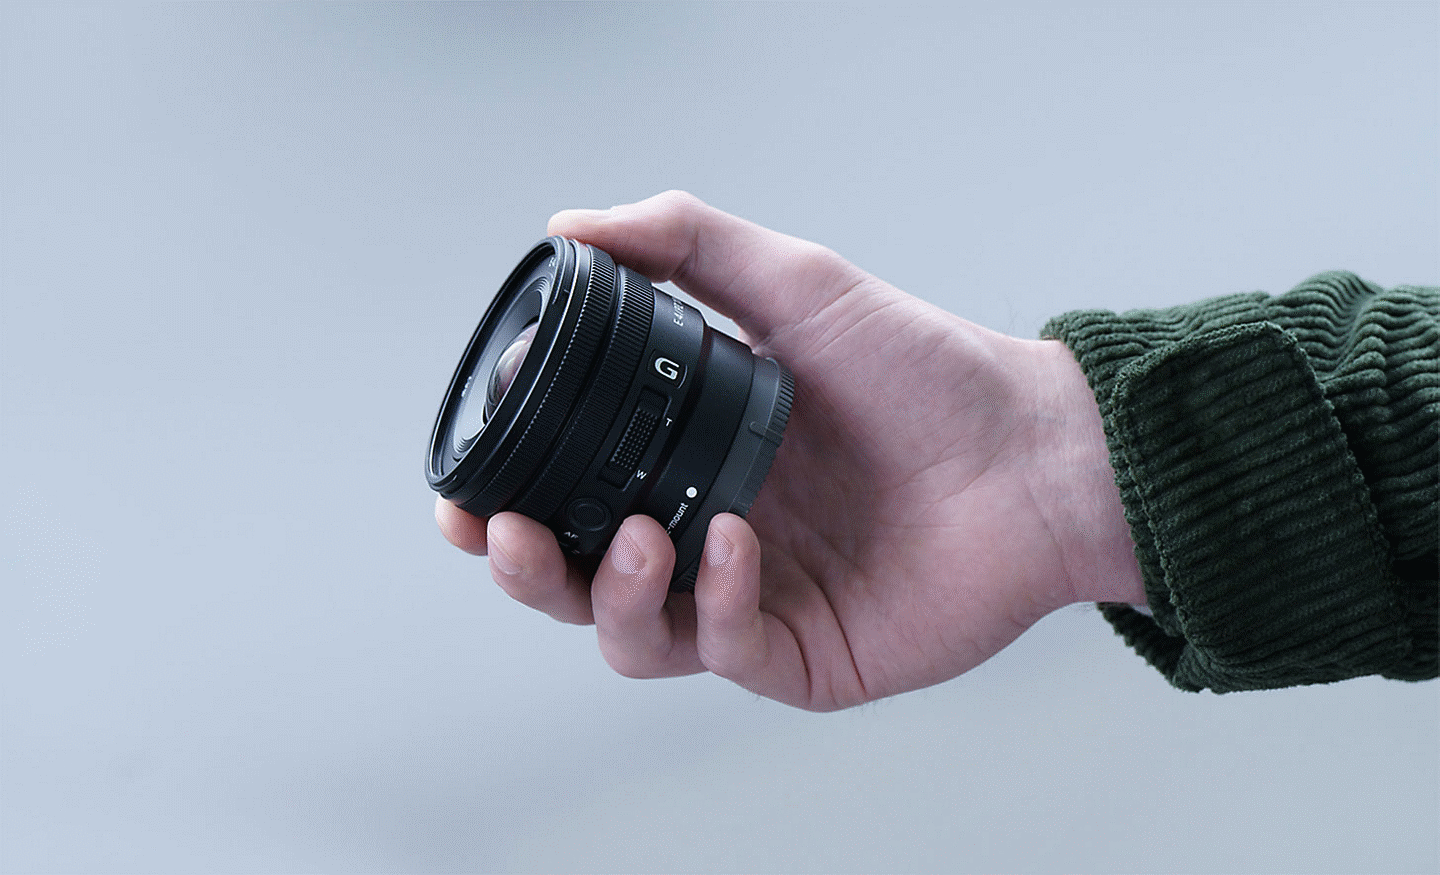 Imagem da mão de uma pessoa a segurar a E PZ 10-20 mm F4 G, mostrando que a lente é suficientemente pequena para caber na mão